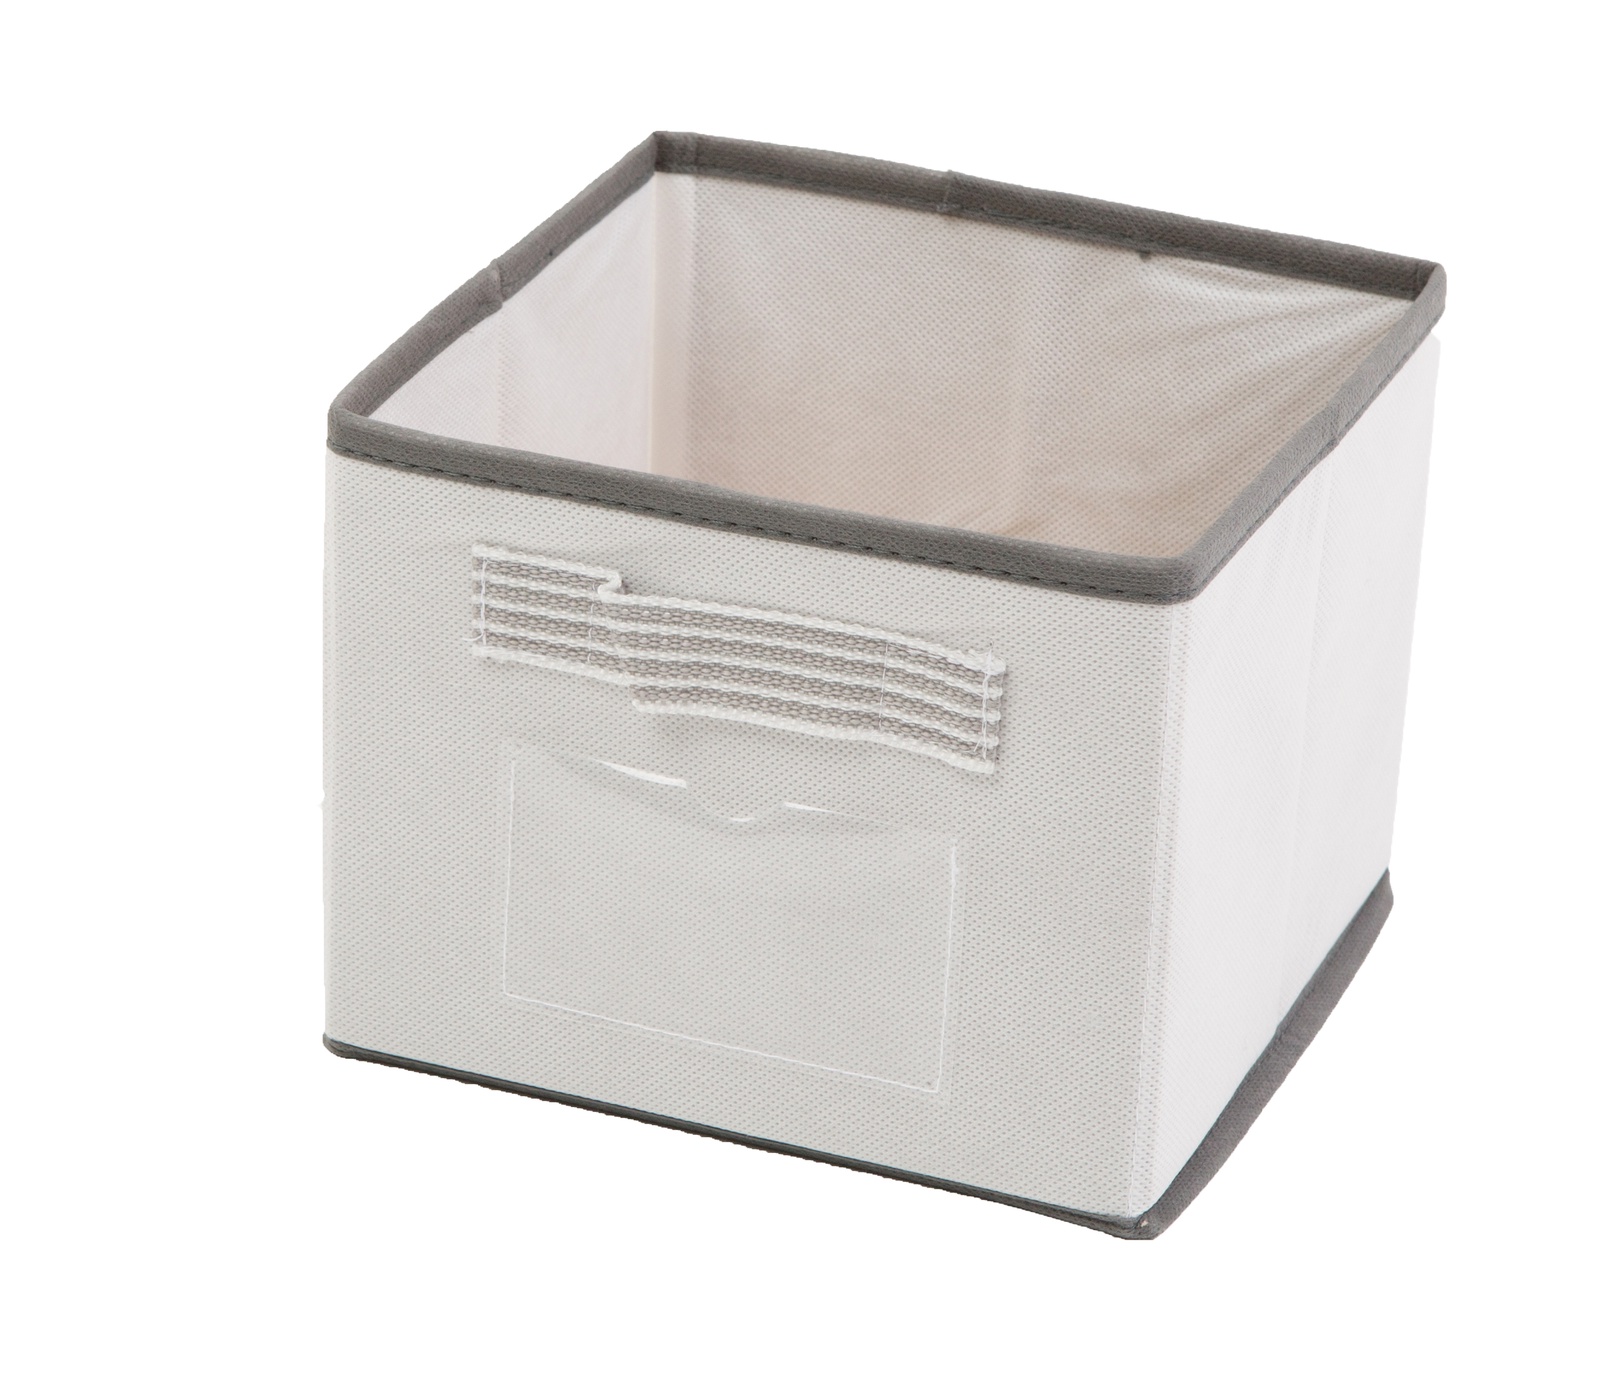 Корбка для хранения вещей Bella Casa, цвет: белый, 18x18x15 см. BC25004